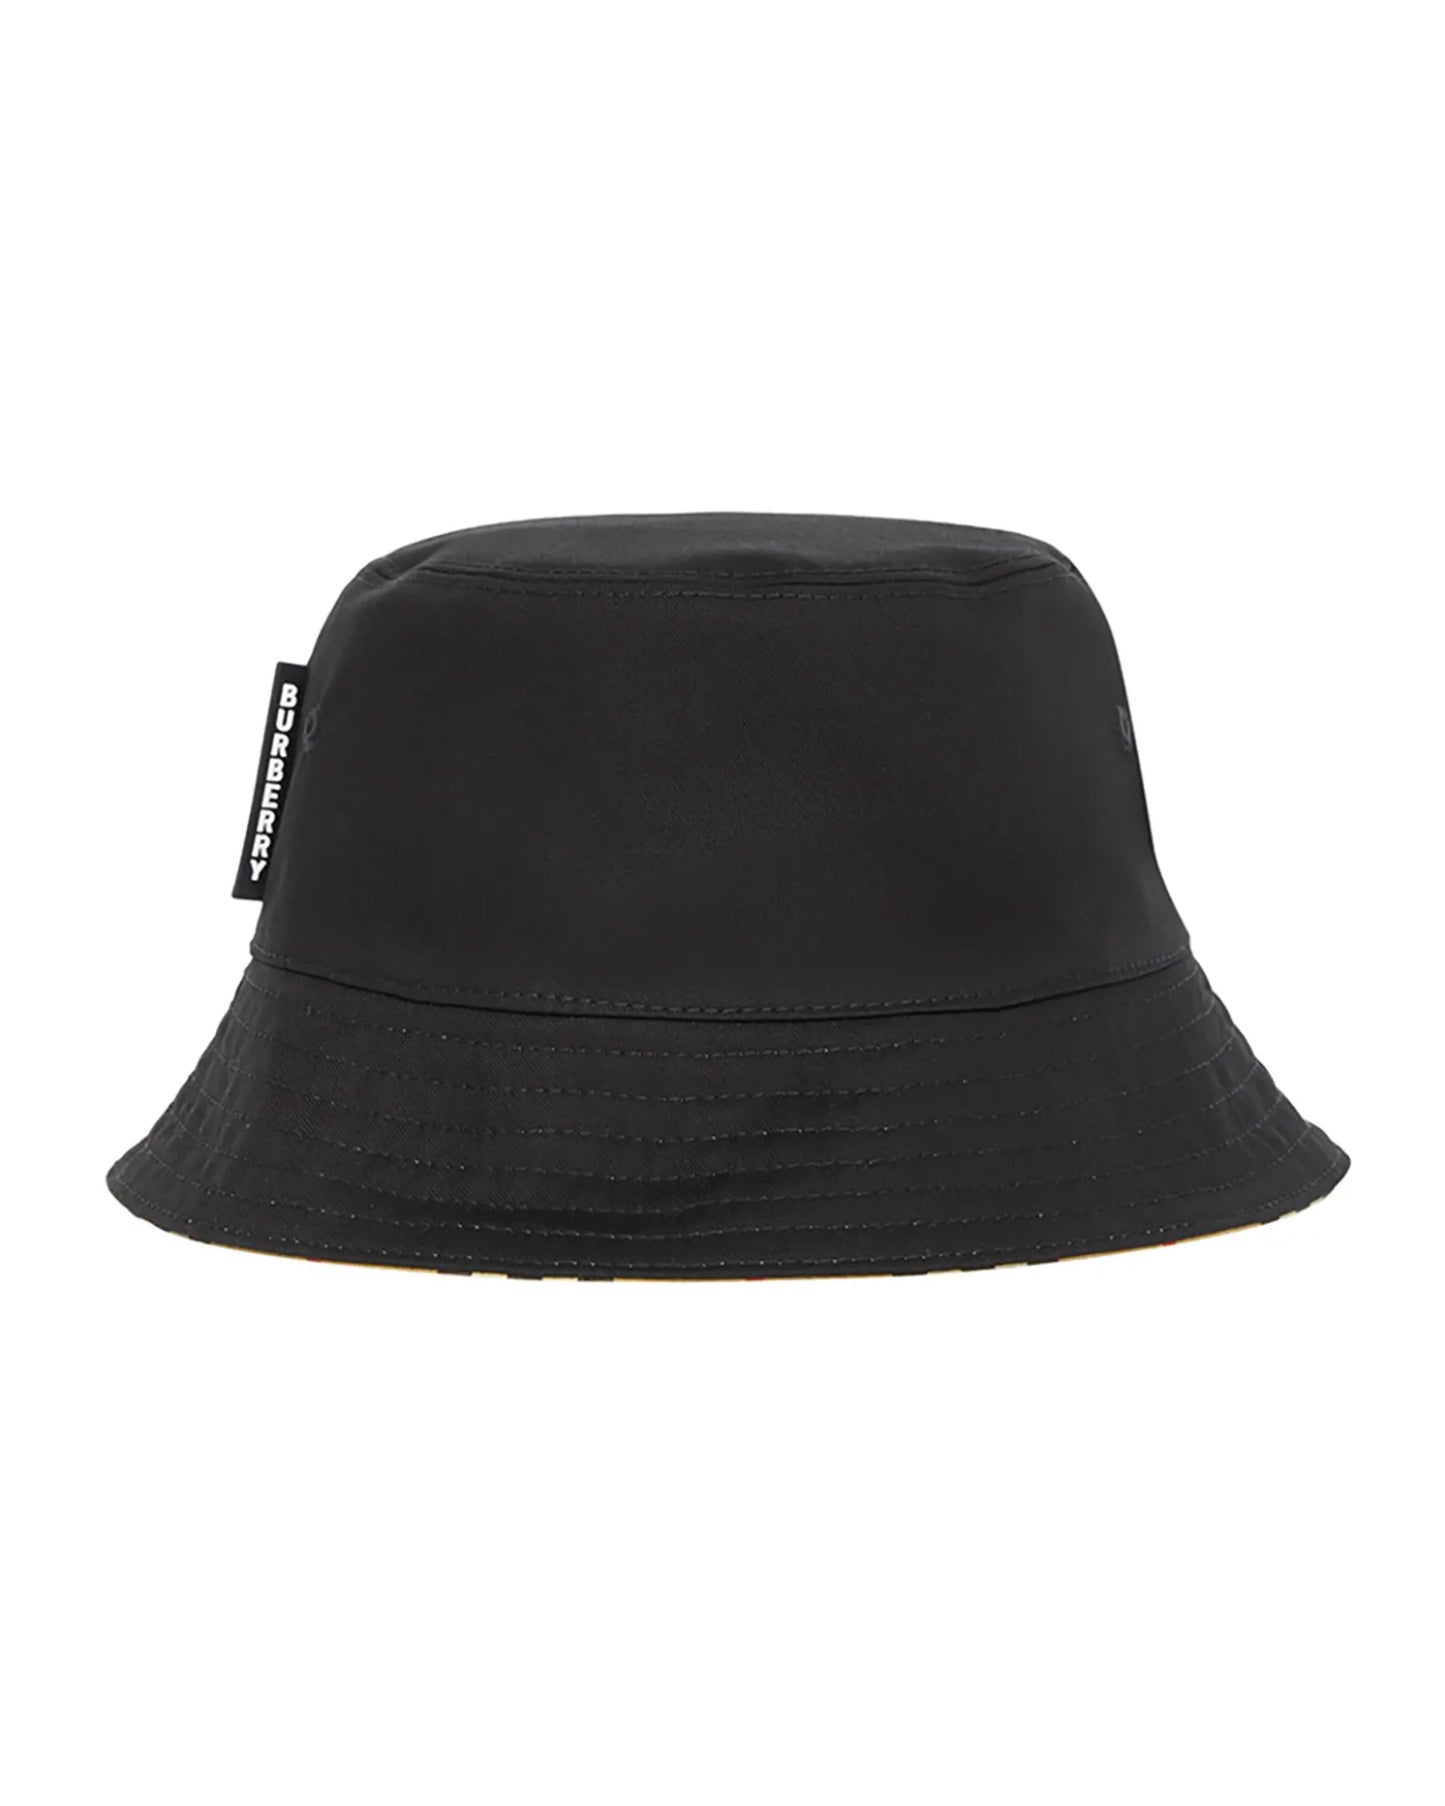 Burberry Beige & Black Reversible Cotton Bucket Hat